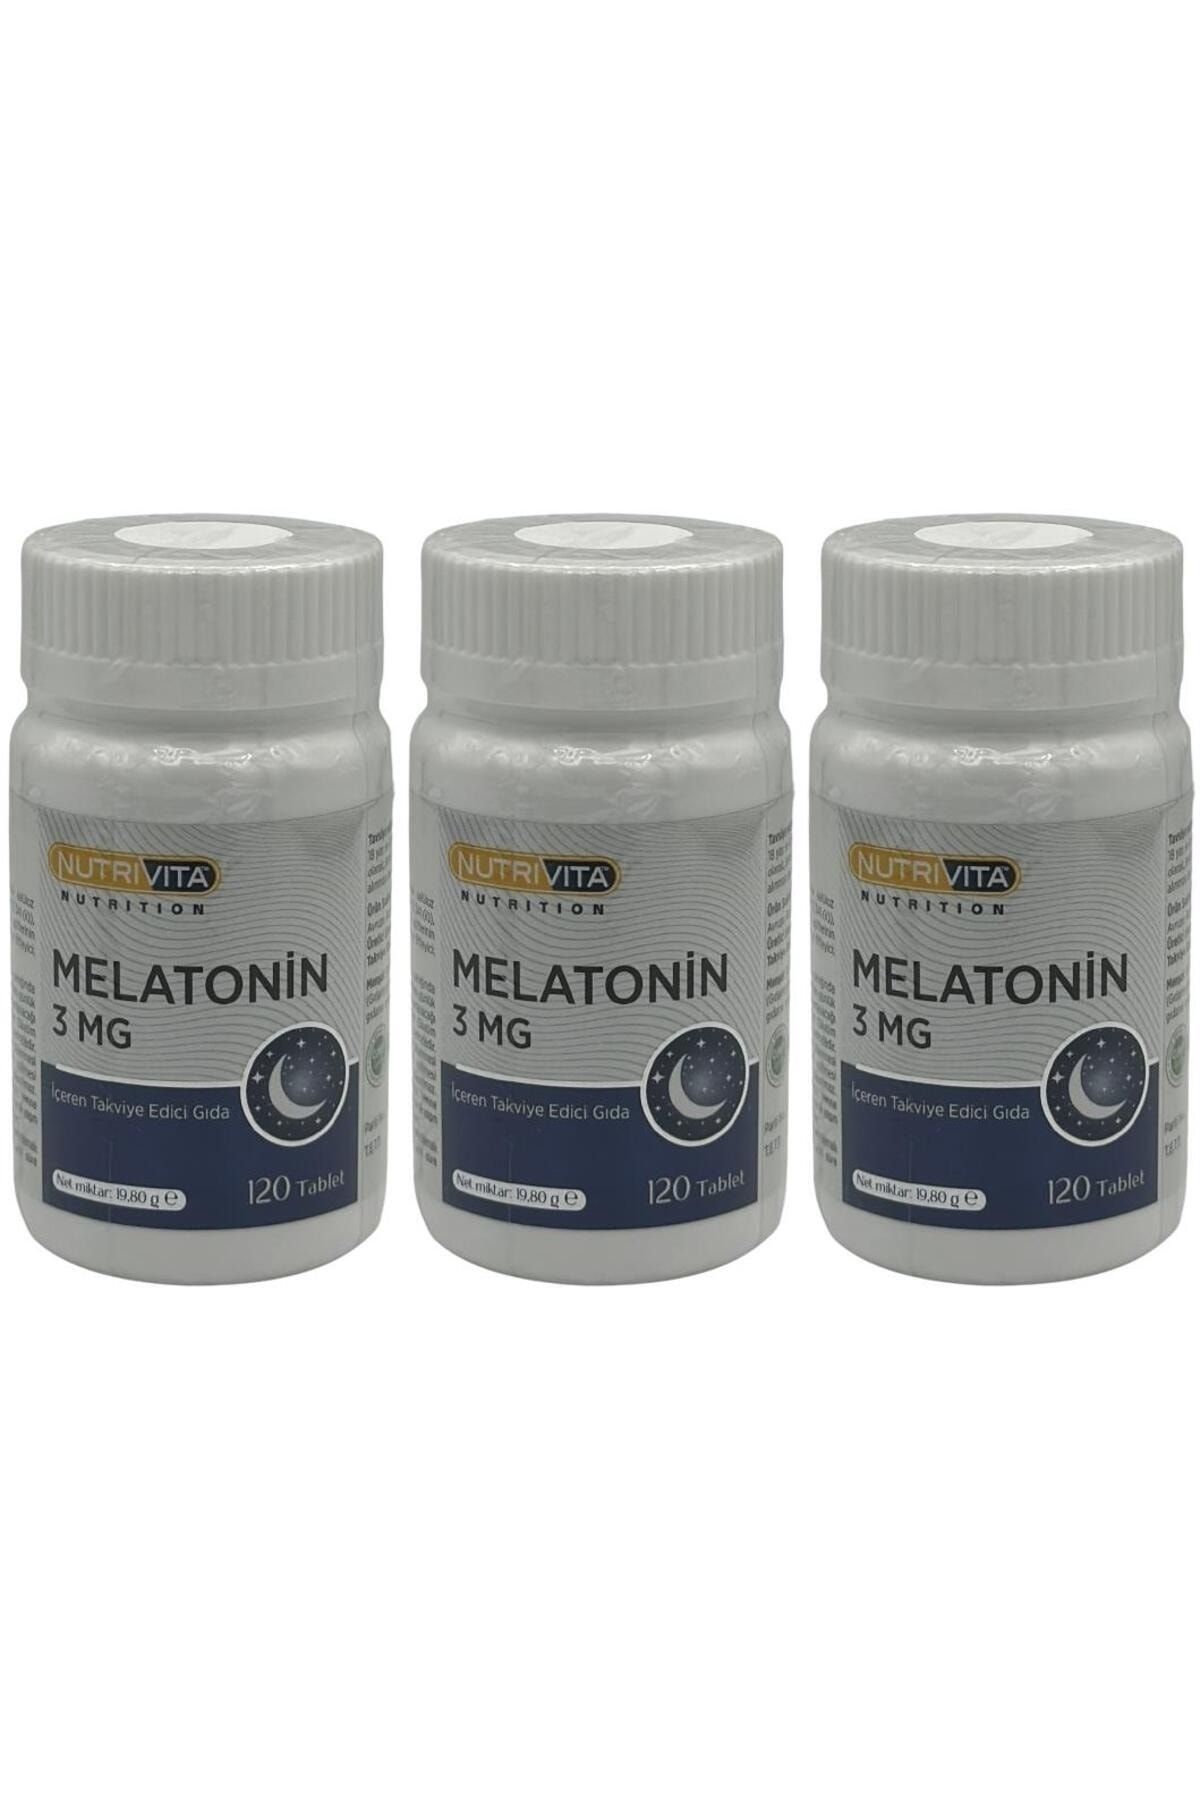 Nutrivita Nutrition Melatonin 3 Mg 3x120 Tablet